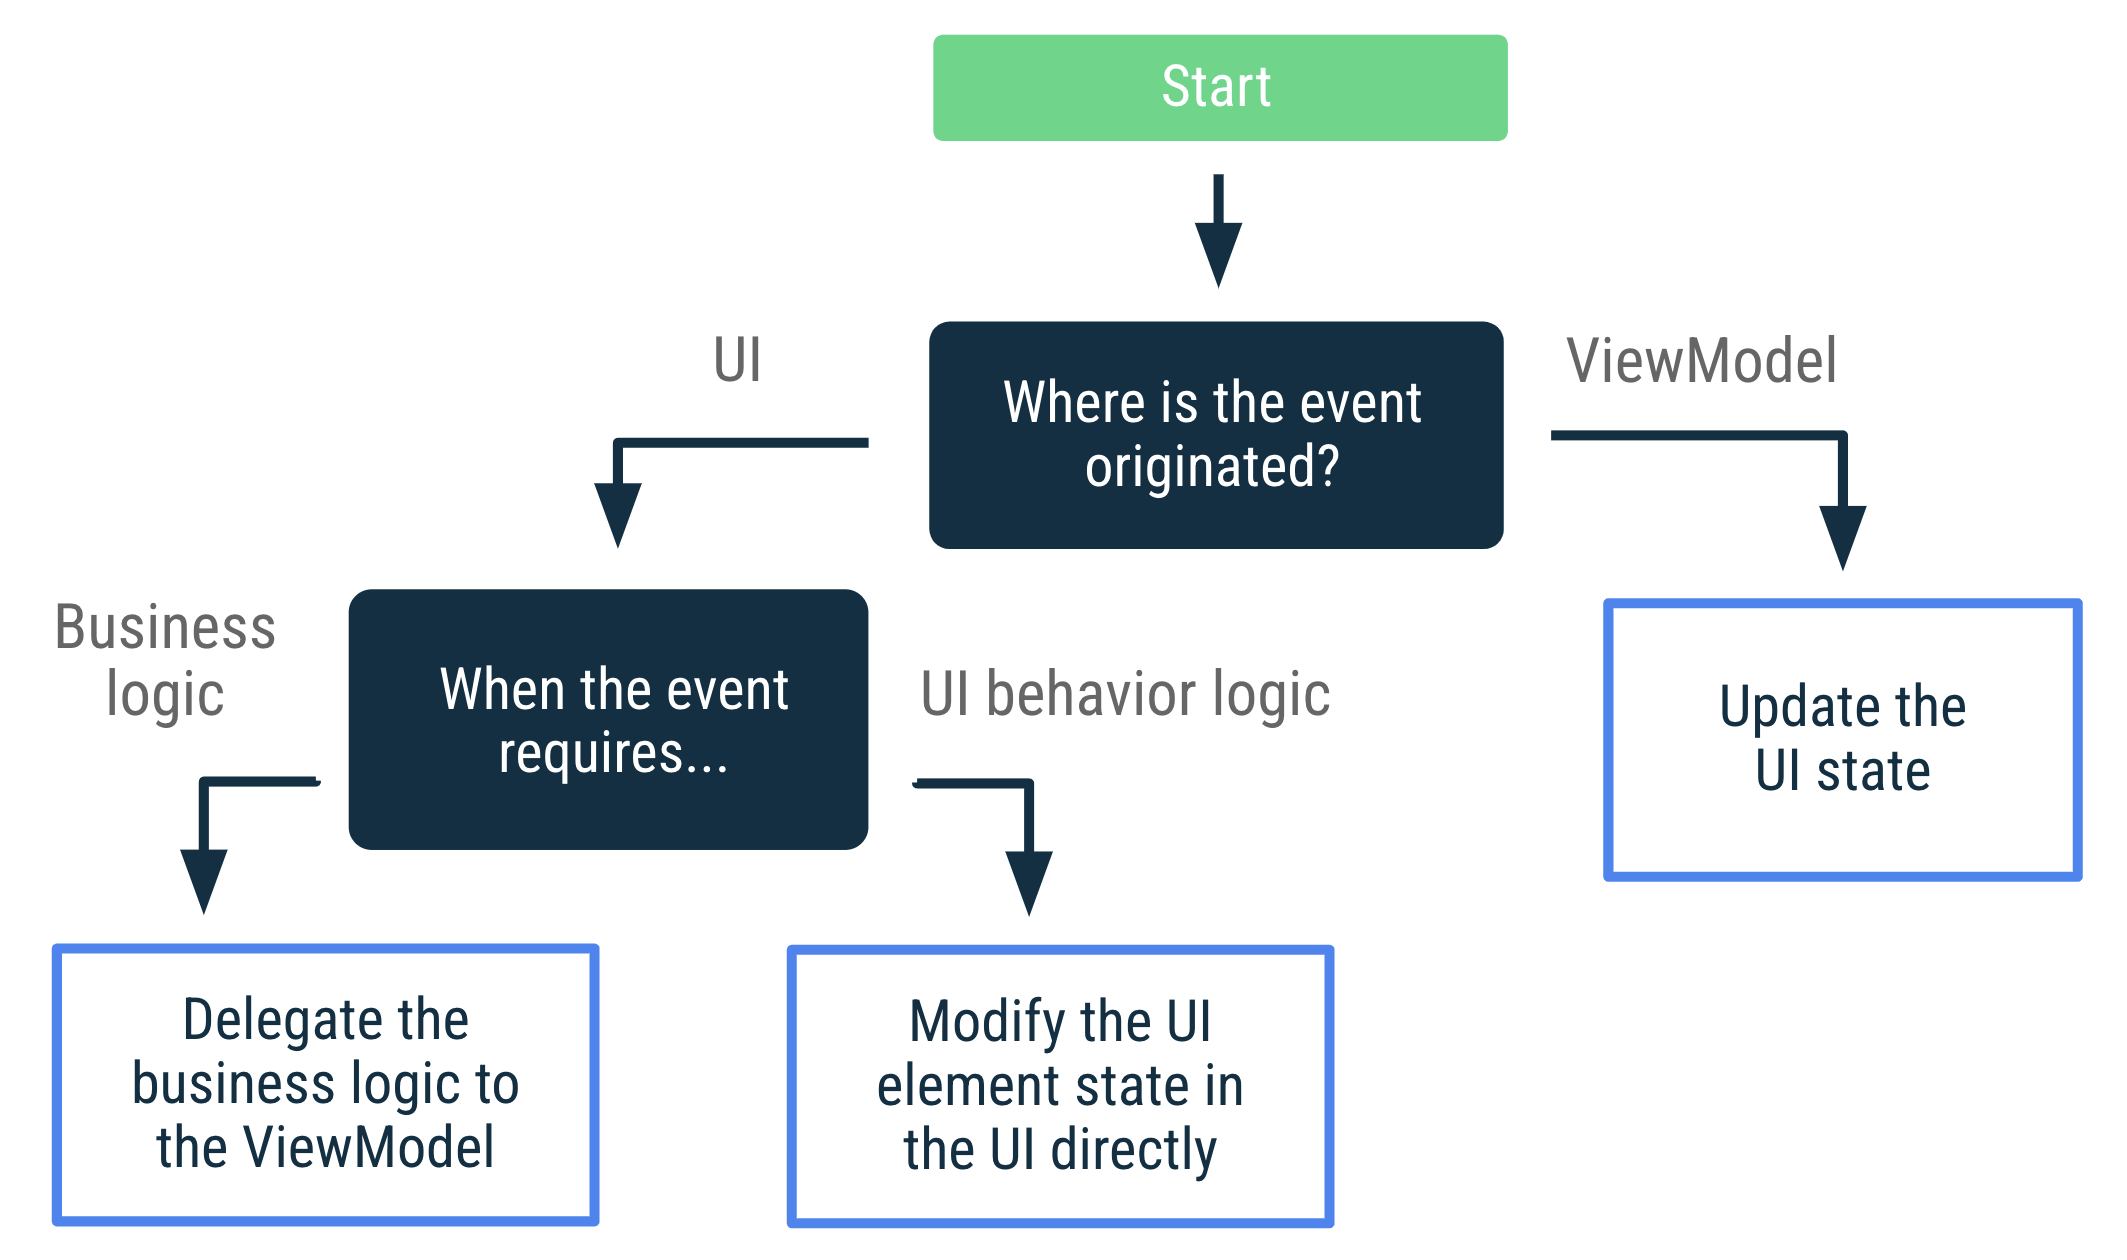 Se o evento foi originado no ViewModel, atualize o estado da interface. Se
    o evento for originado na interface e exigir uma lógica de negócios, delegue
    a lógica de negócios ao ViewModel. Se o evento for originado na interface e
    exigir lógica de comportamento, modifique o estado do elemento diretamente na
    interface.